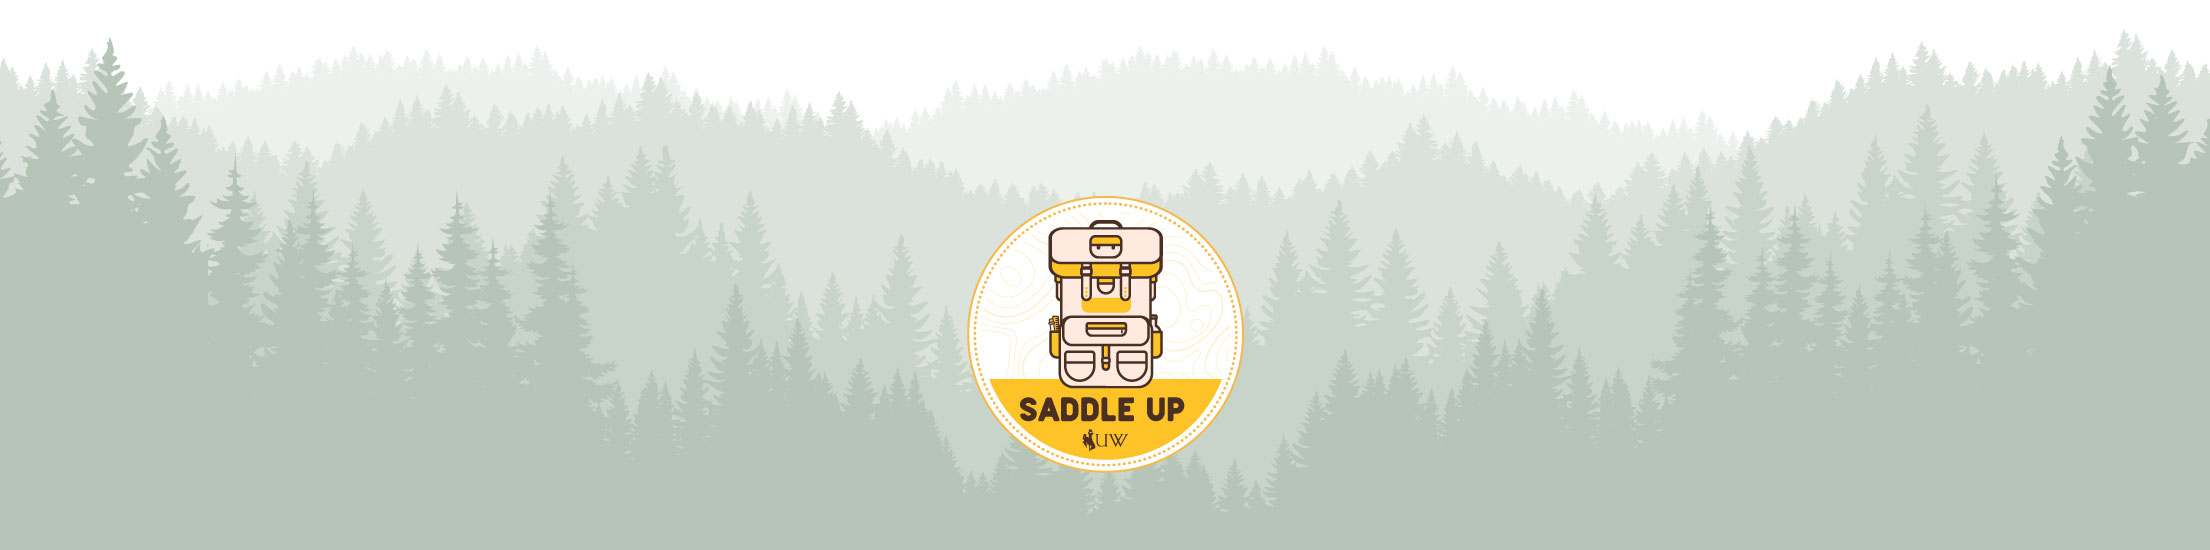 Saddle Up logo on green tree background